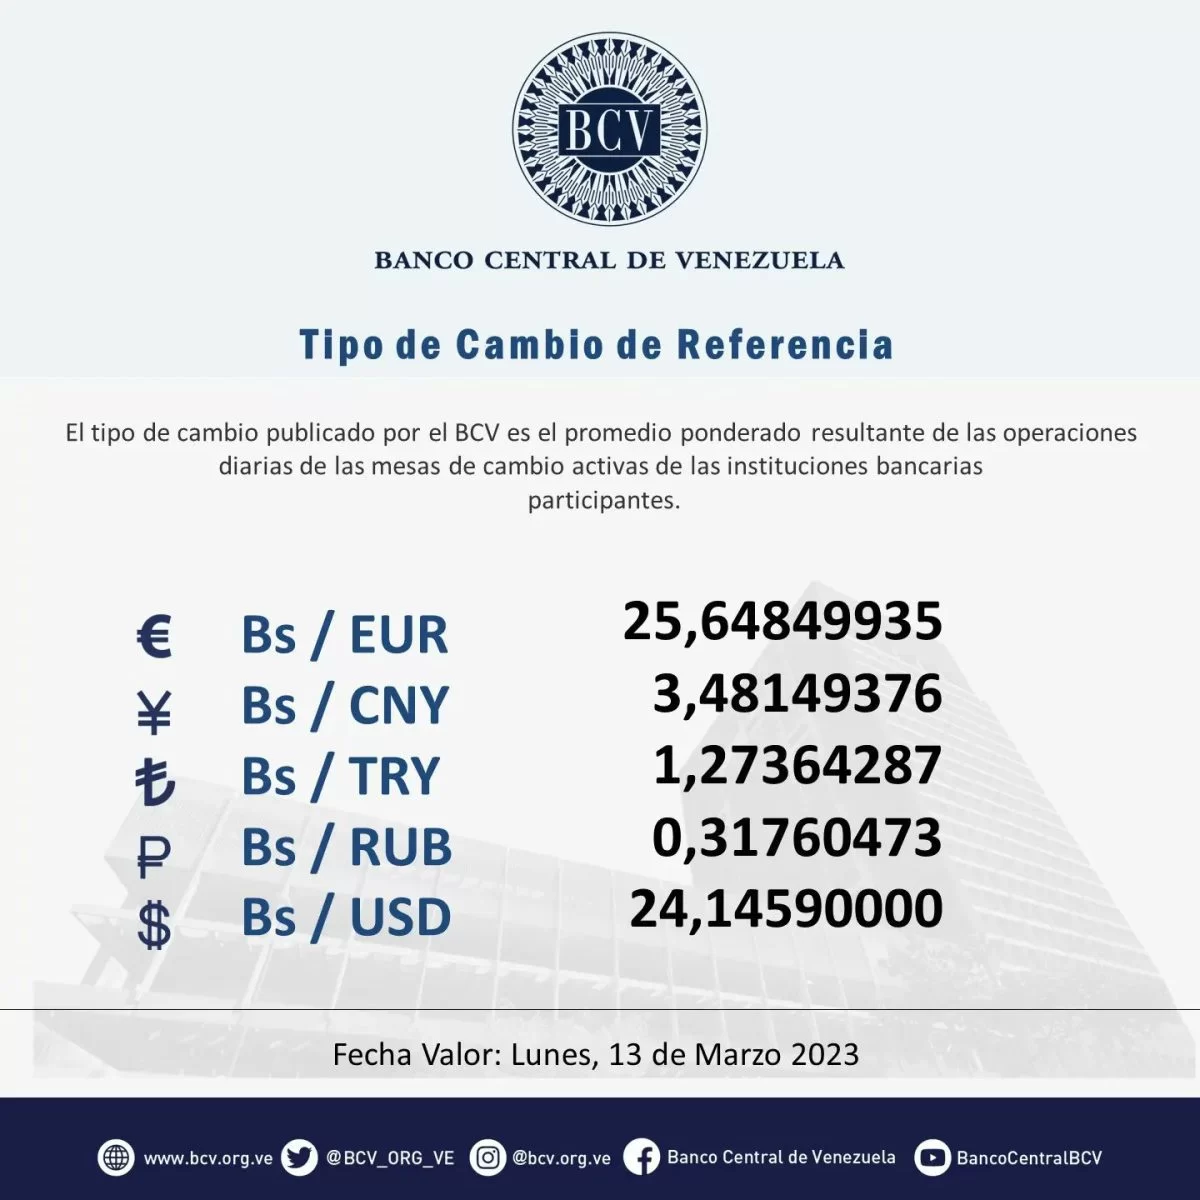 dolartoday en venezuela precio del dolar sabado 11 de marzo de 2023 laverdaddemonagas.com bcv11111